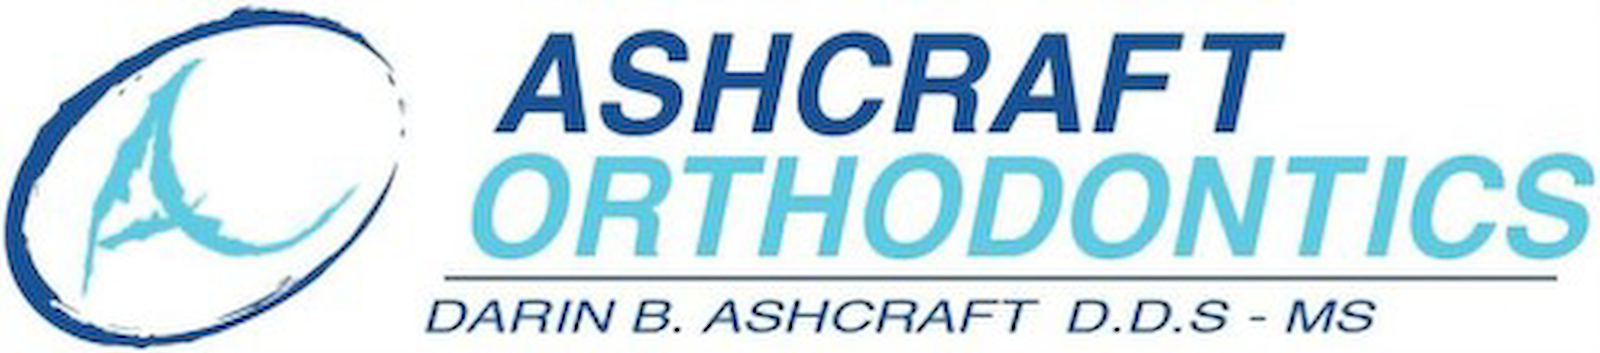 Ashcraft Orthodontics